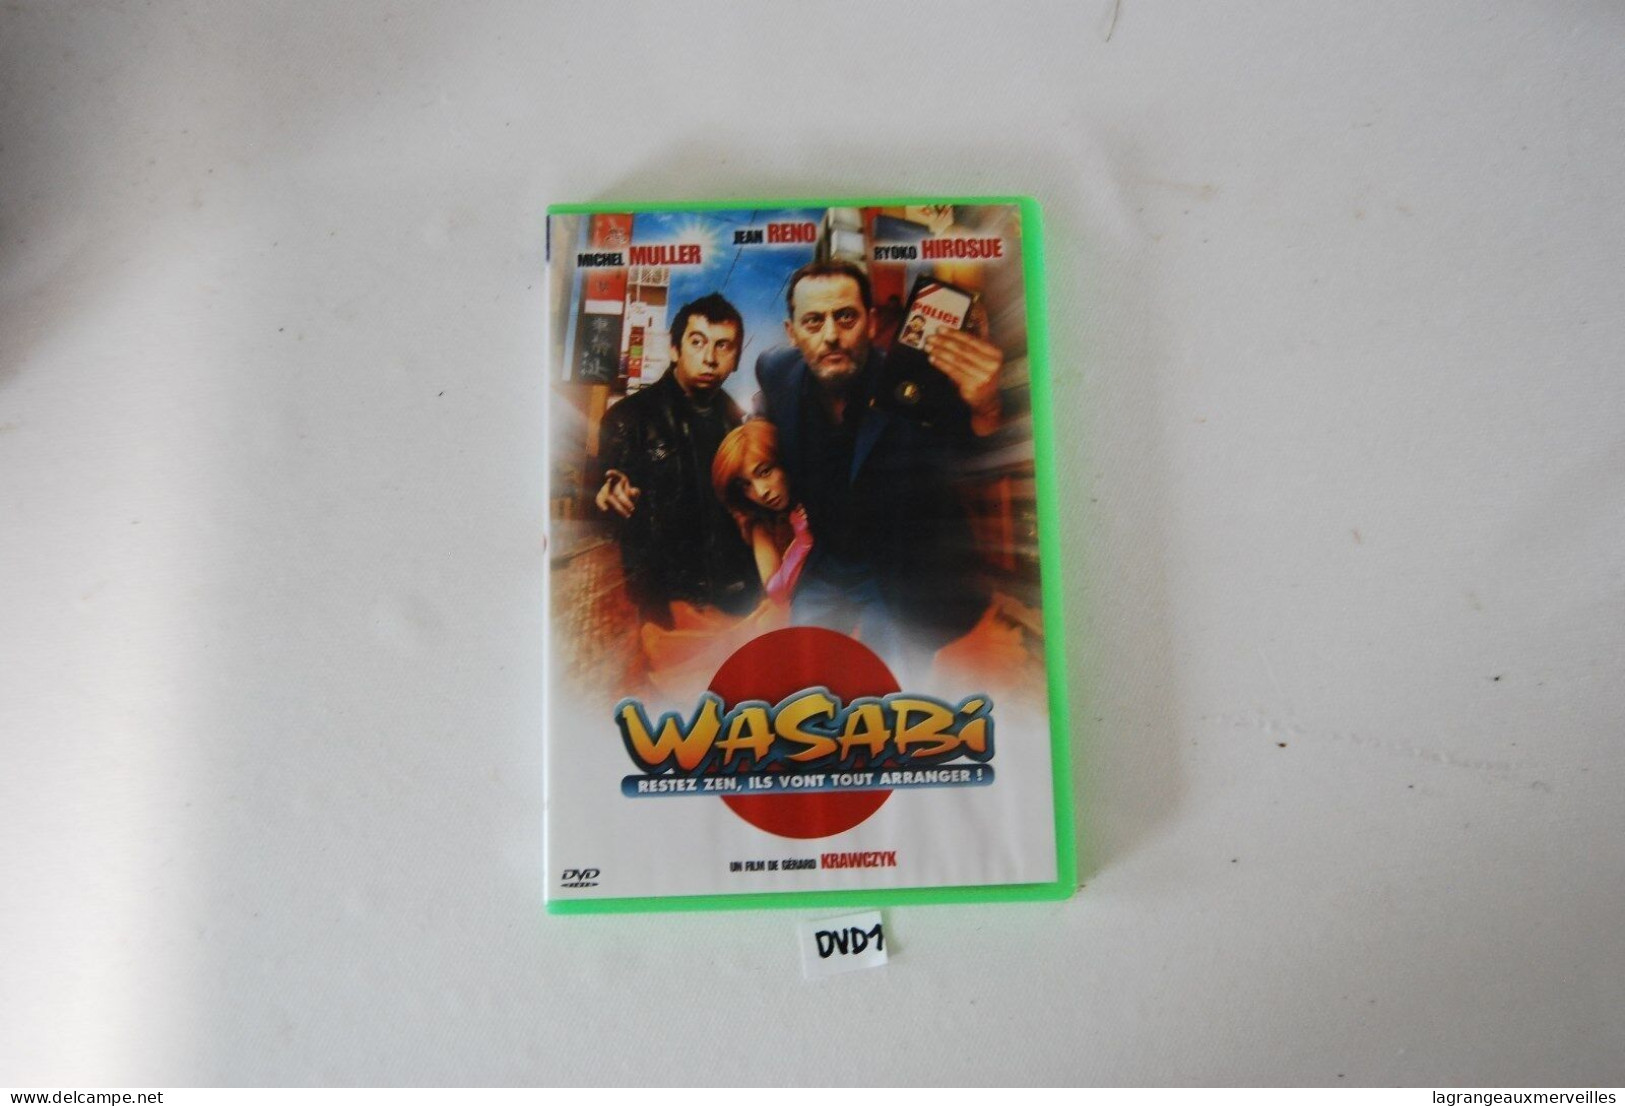 DVD 1 - WASABI - JEAN RENO - Cómedia